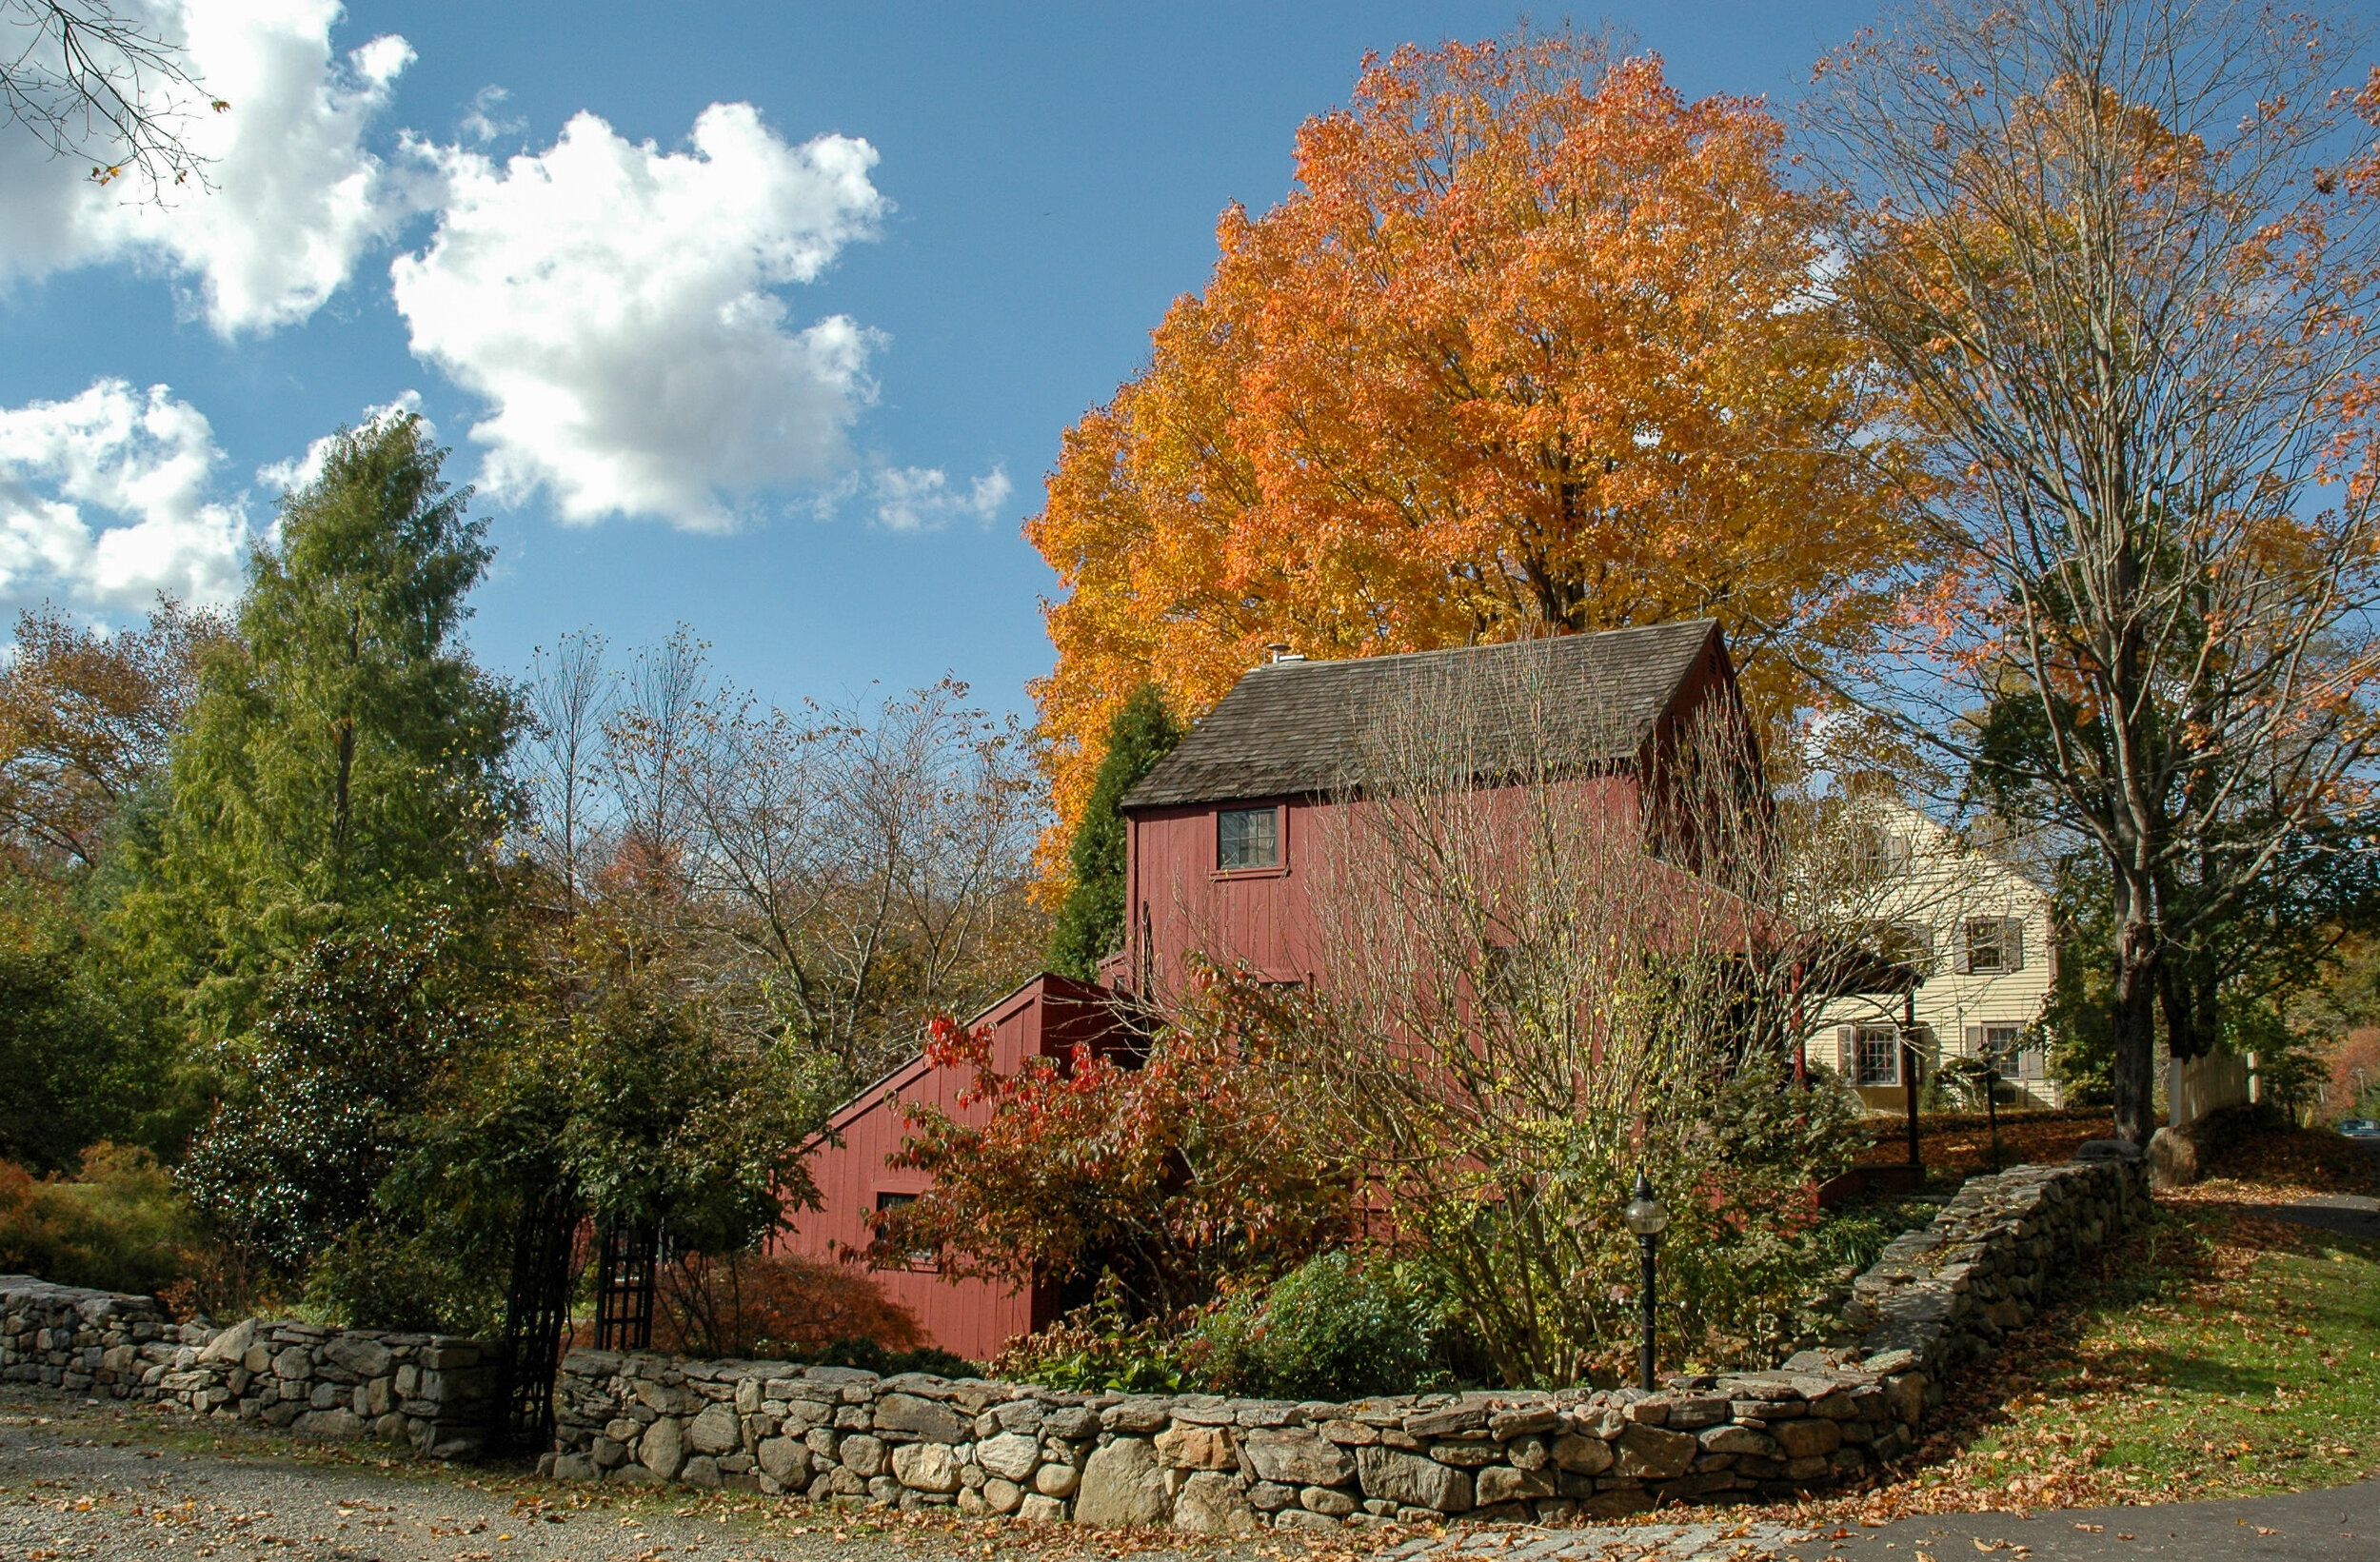  New England Autumn II 